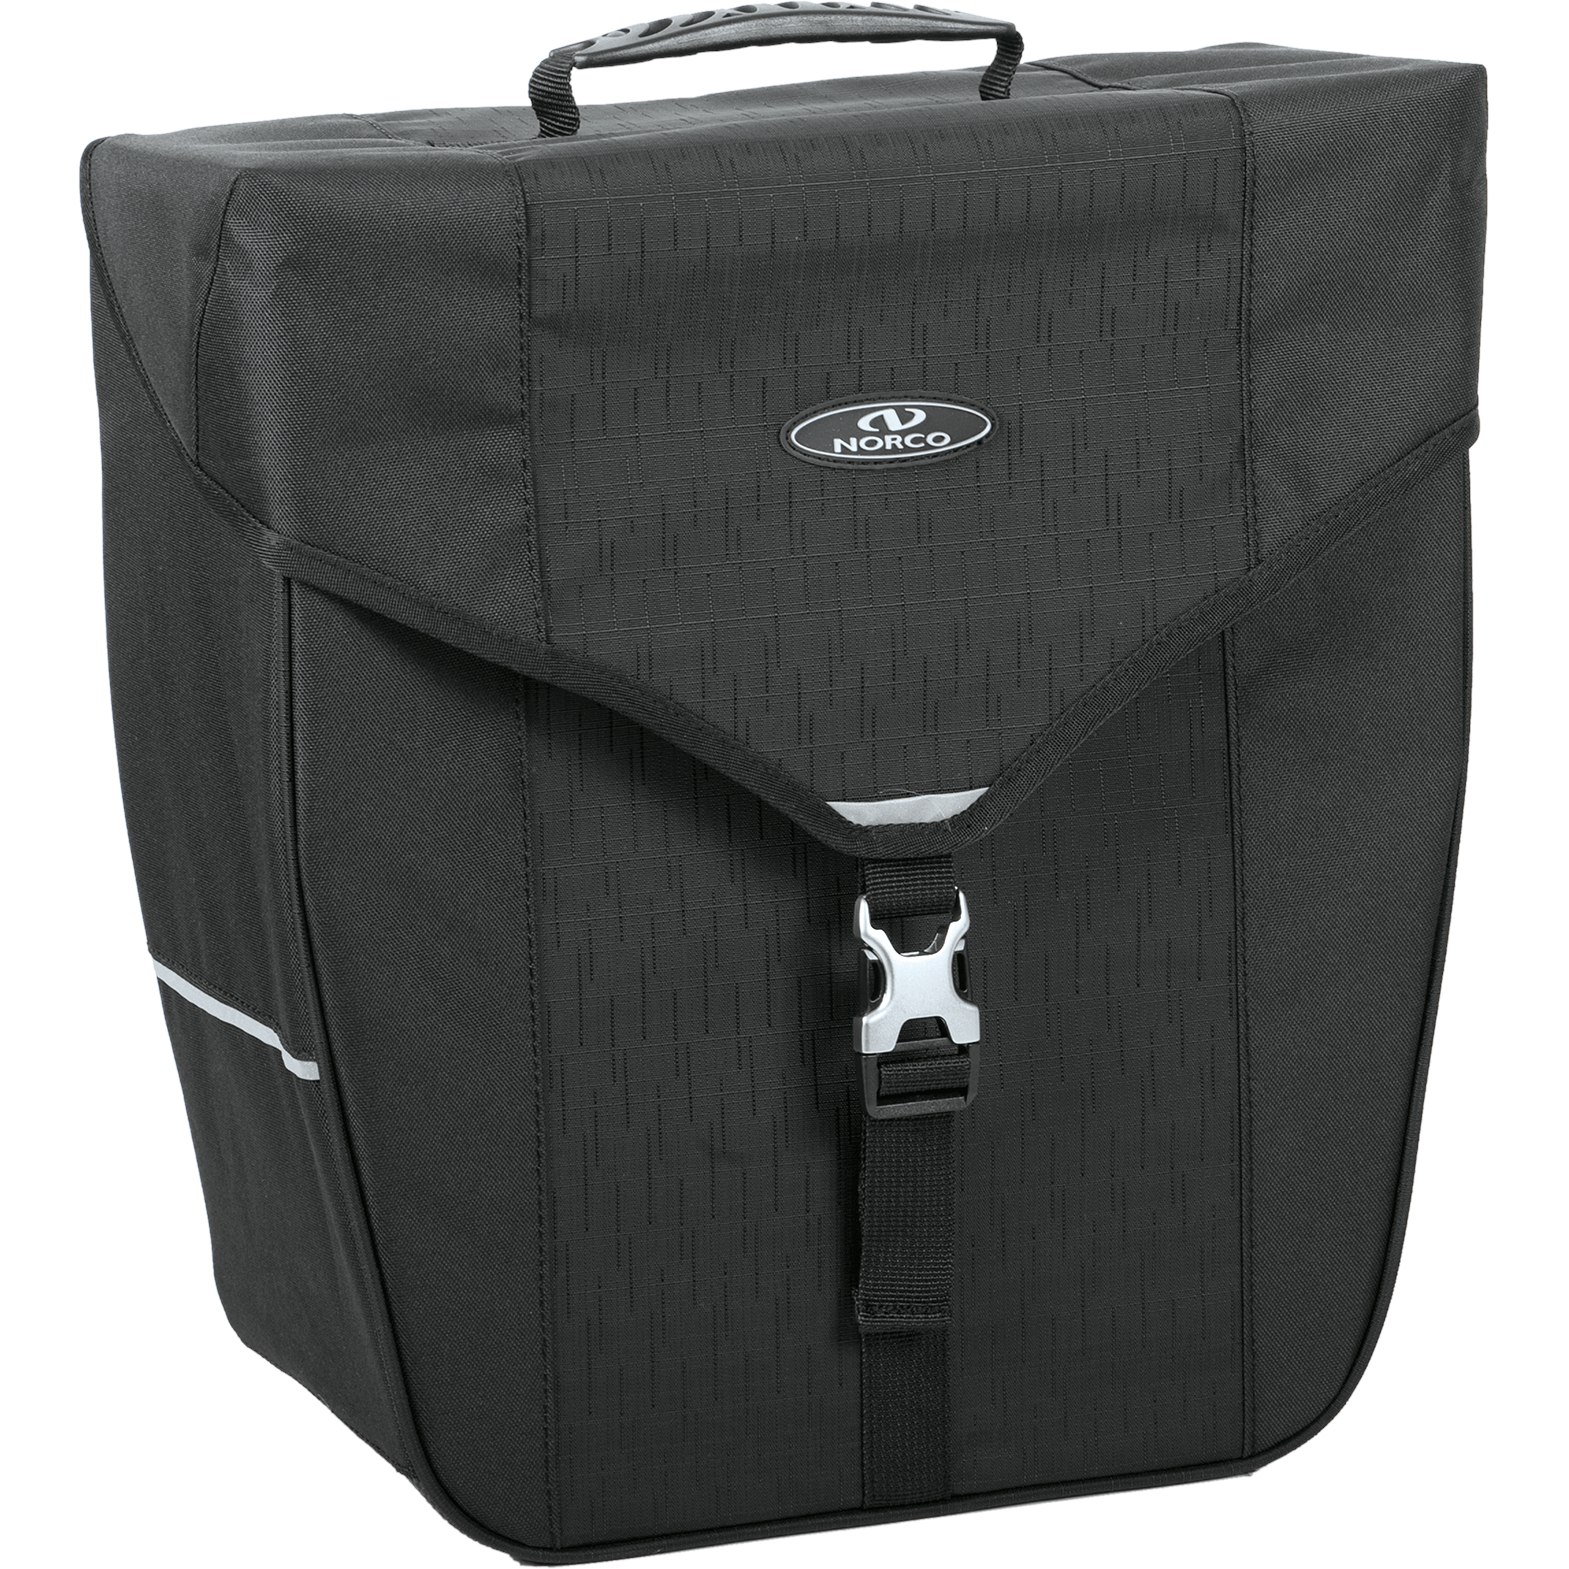 Produktbild von Norco Bandon City Gepäckträgertasche 0203KS - 18L - schwarz